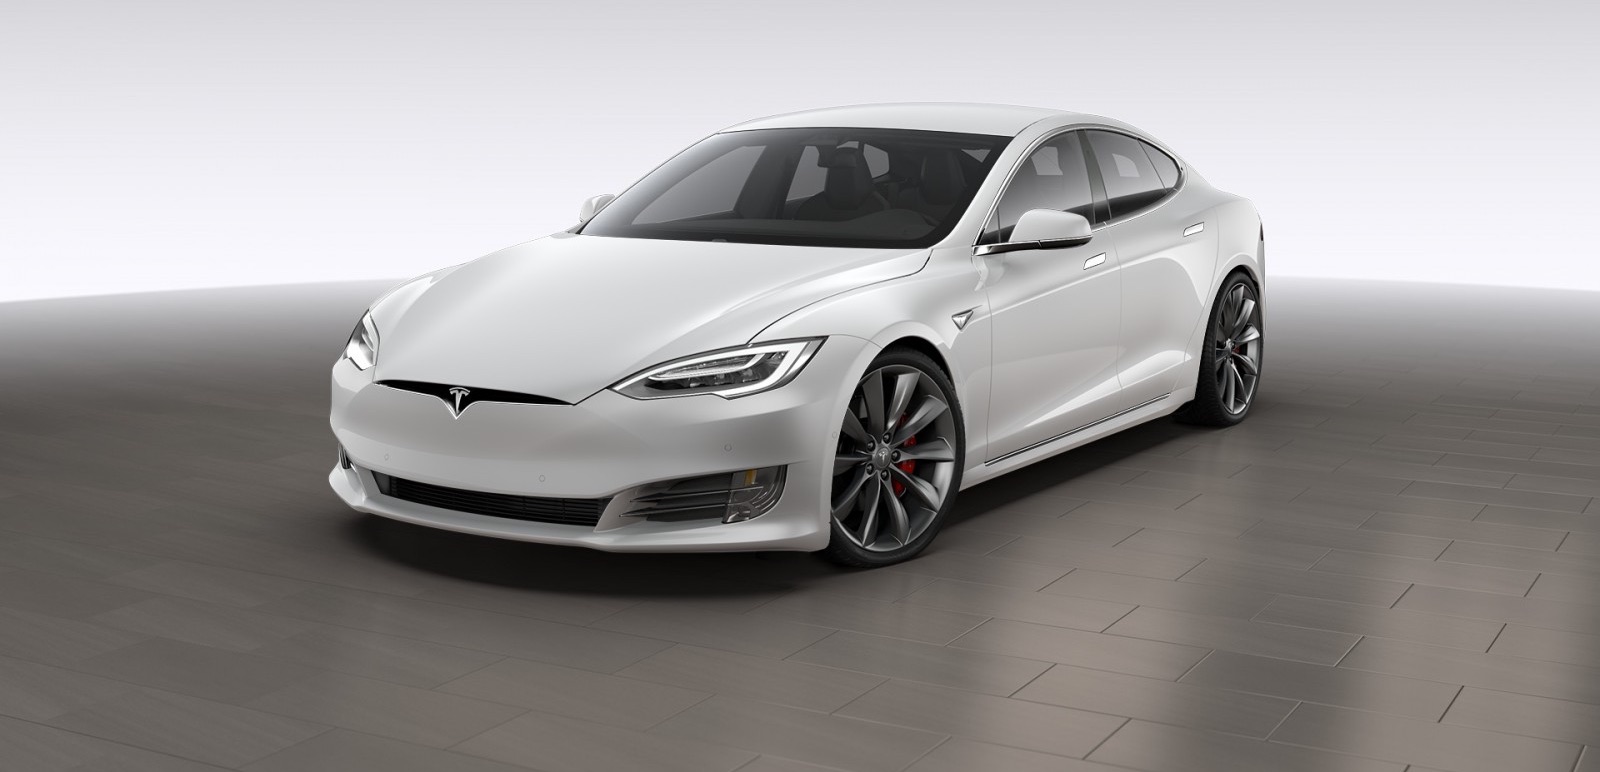 Tesla: Reichweite & Leistung des Model S